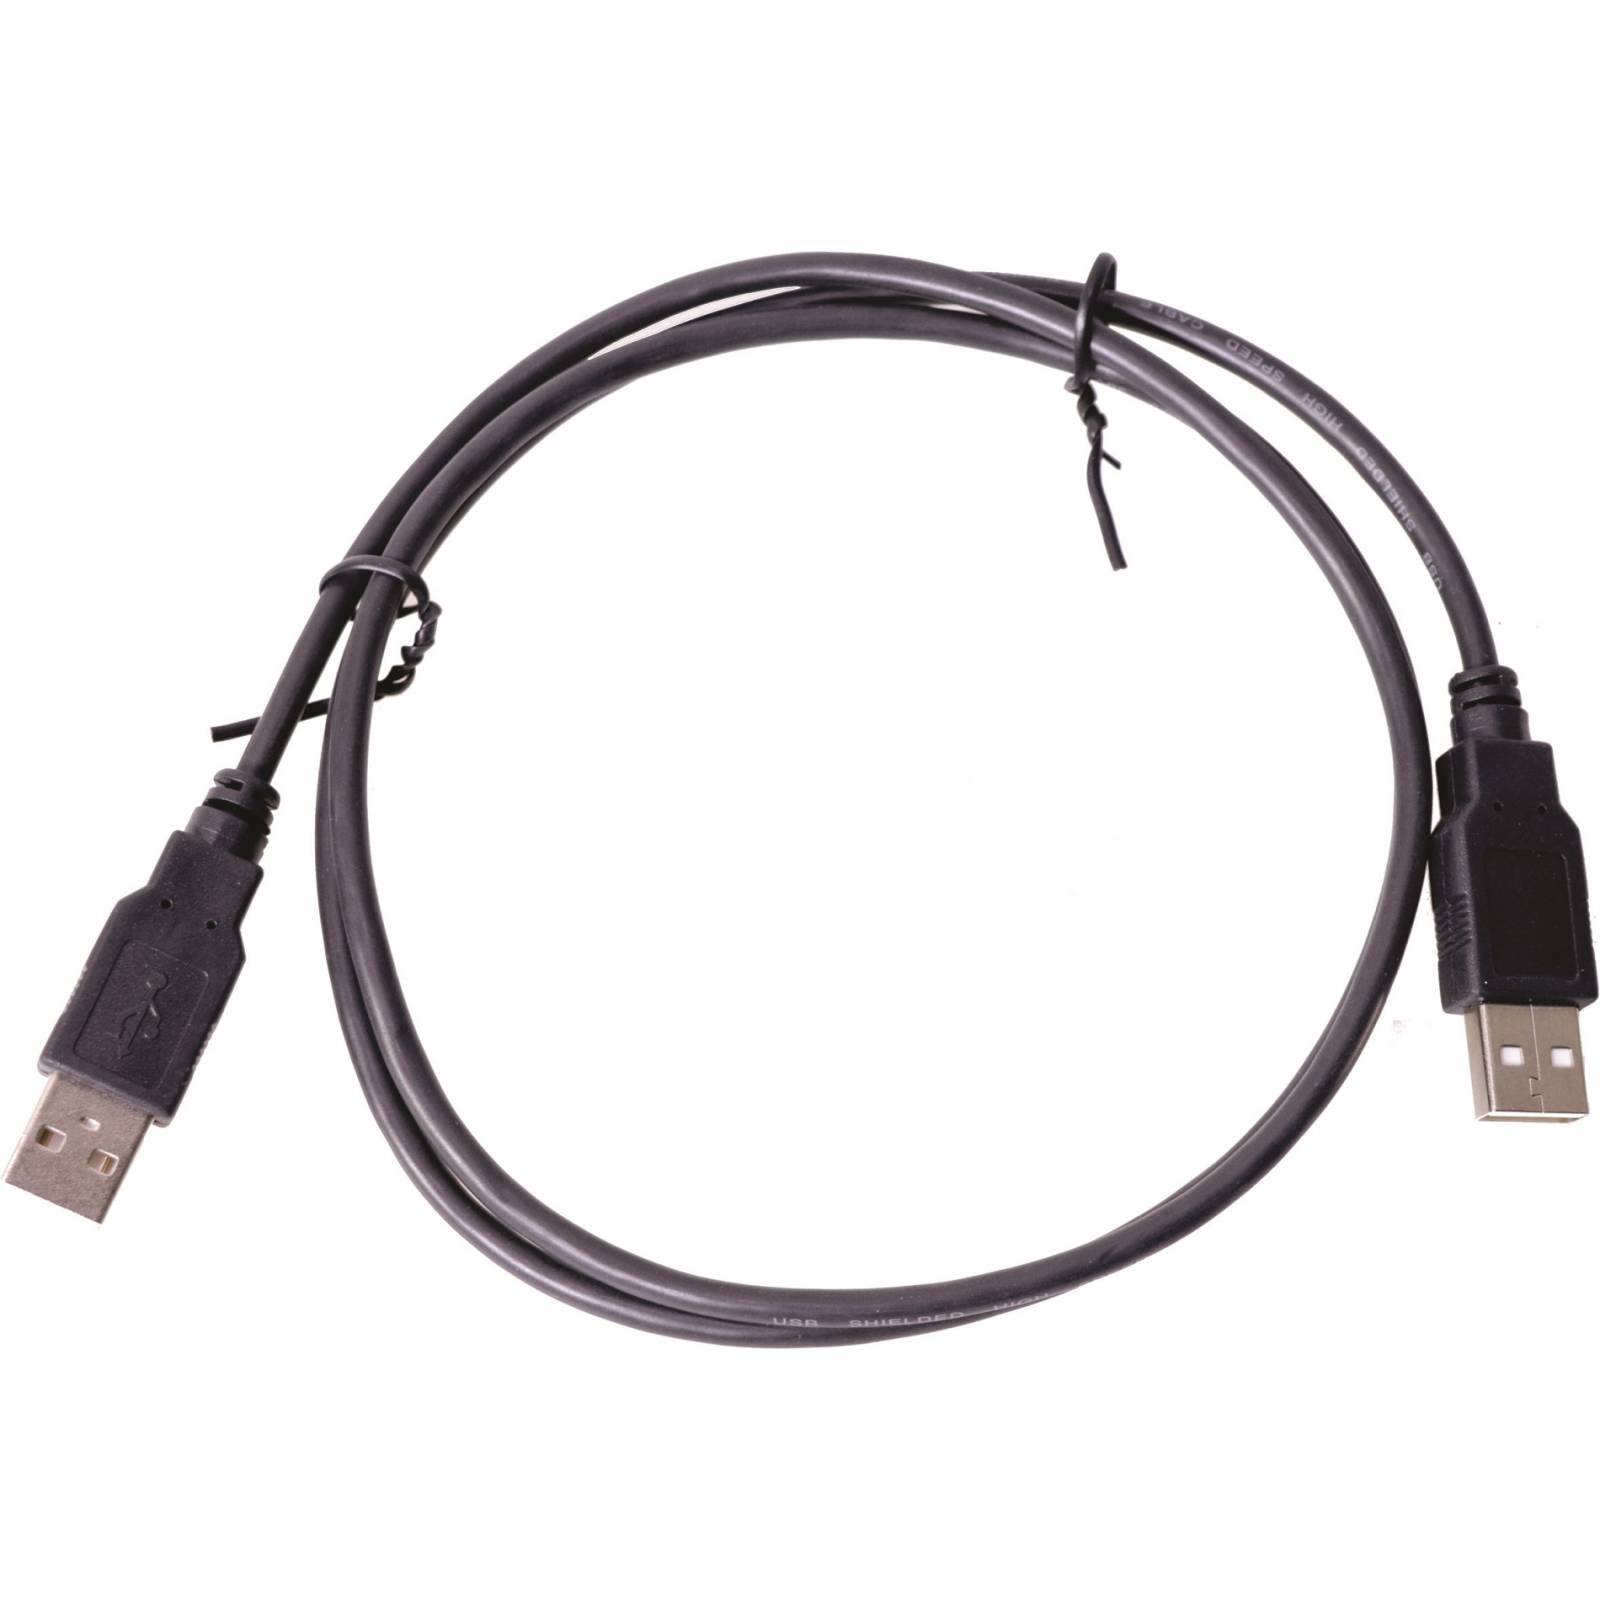 Cable Con Plug USB 1 Metro 